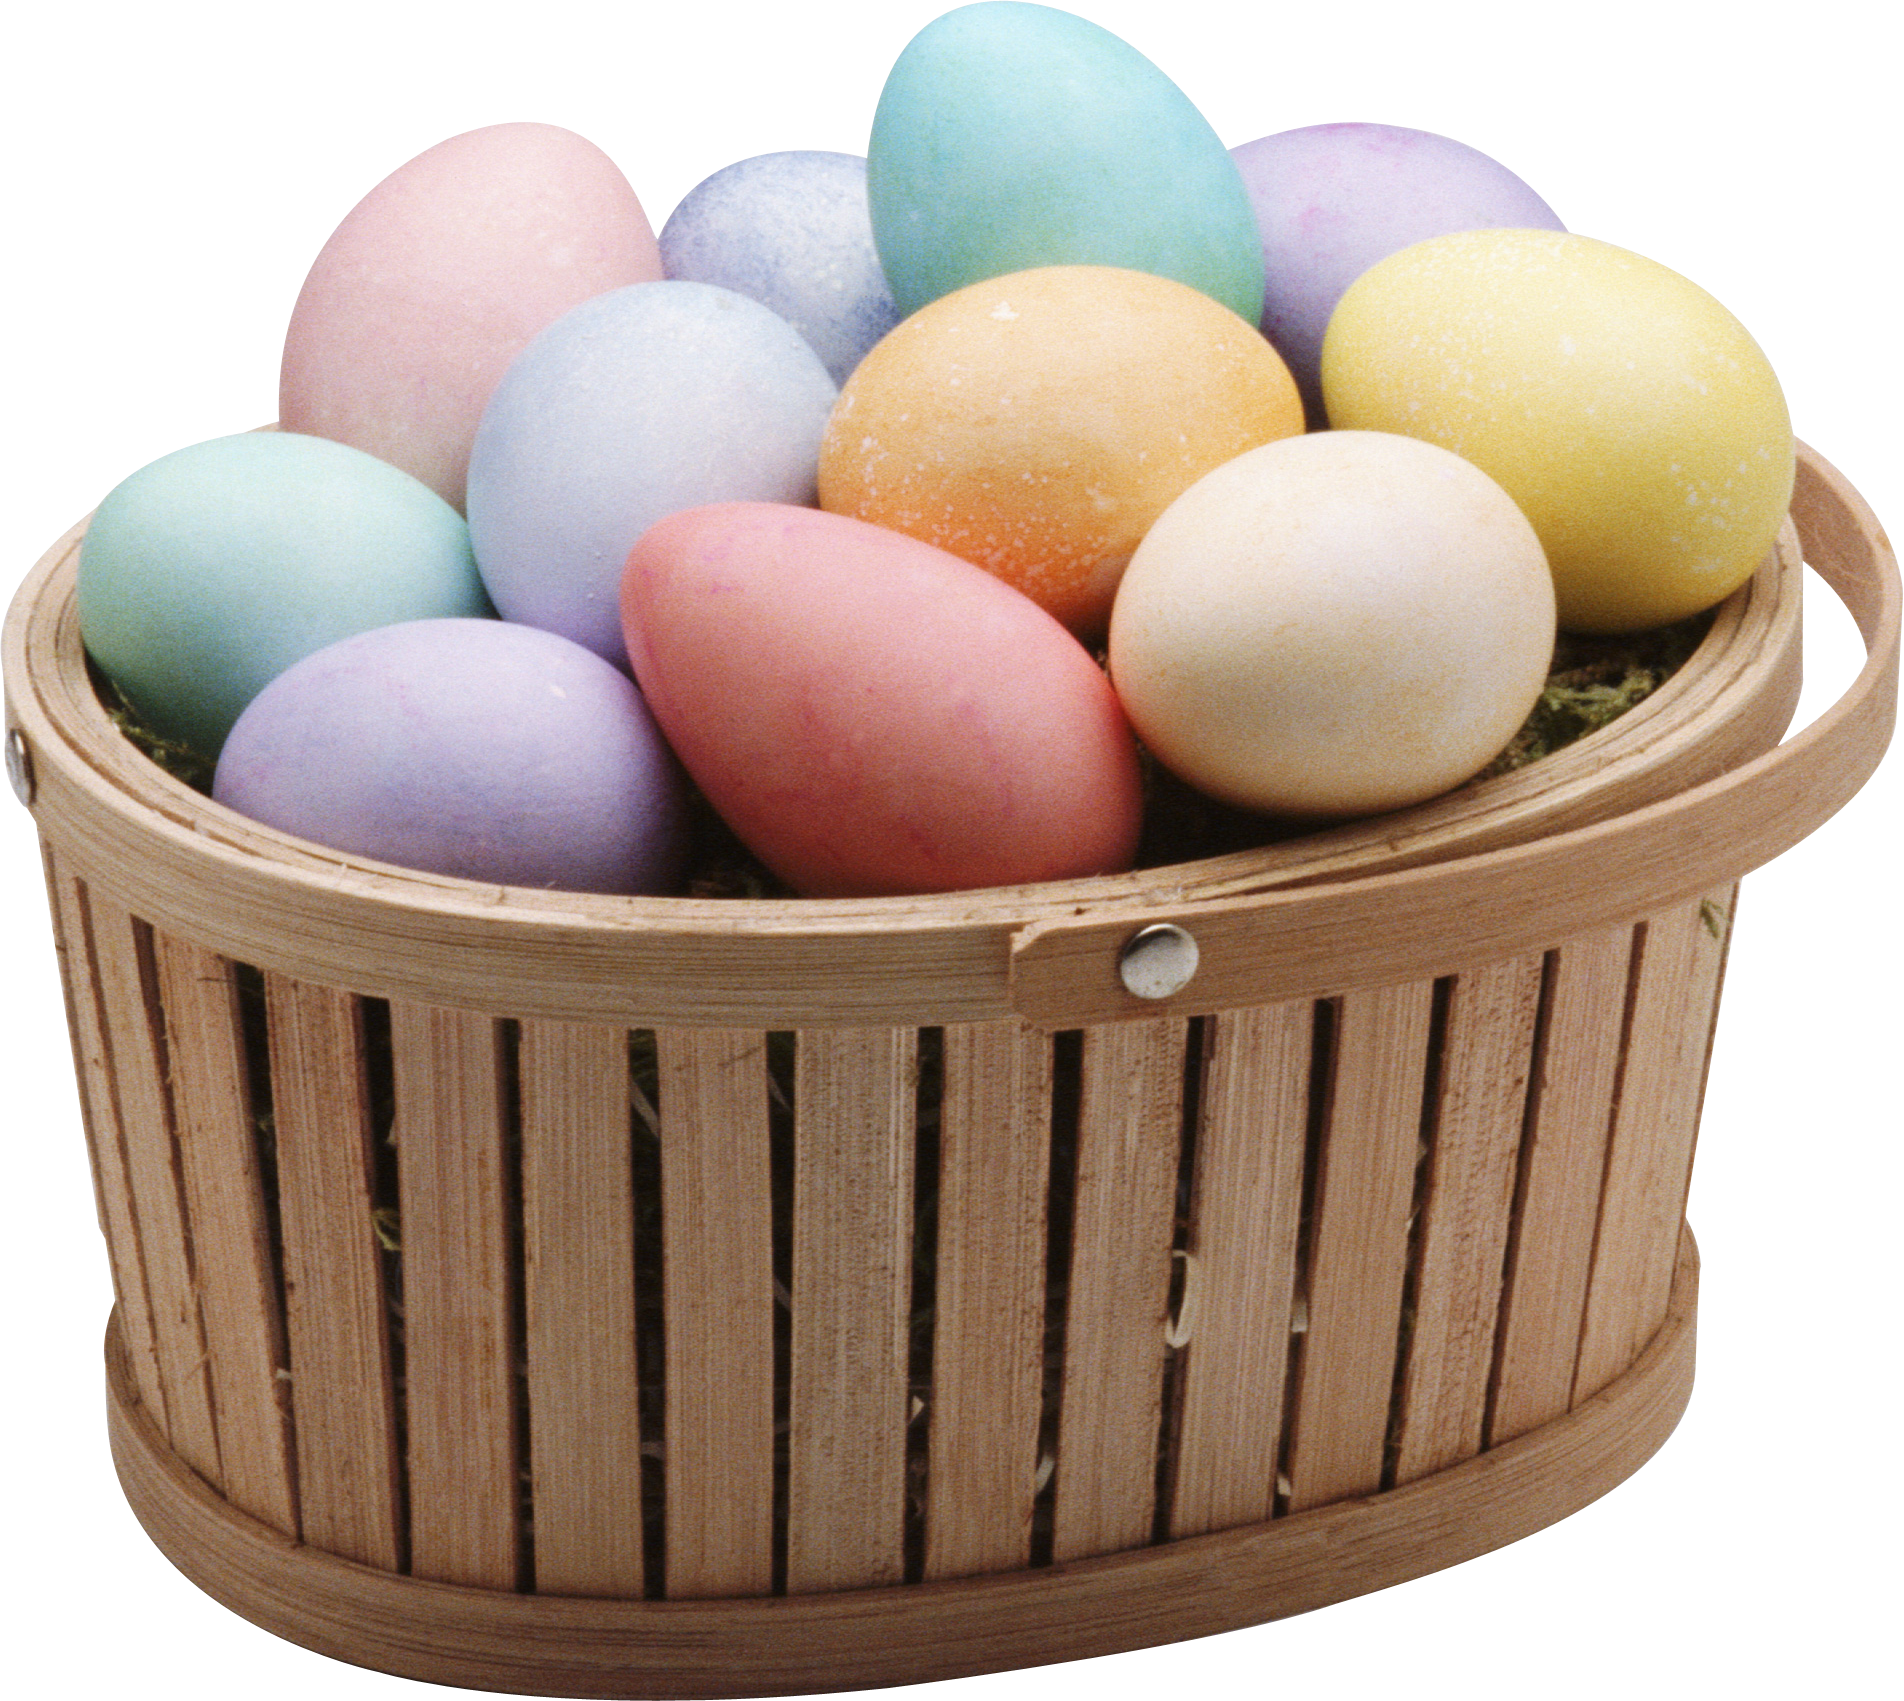 Ovos coloridos em uma cesta